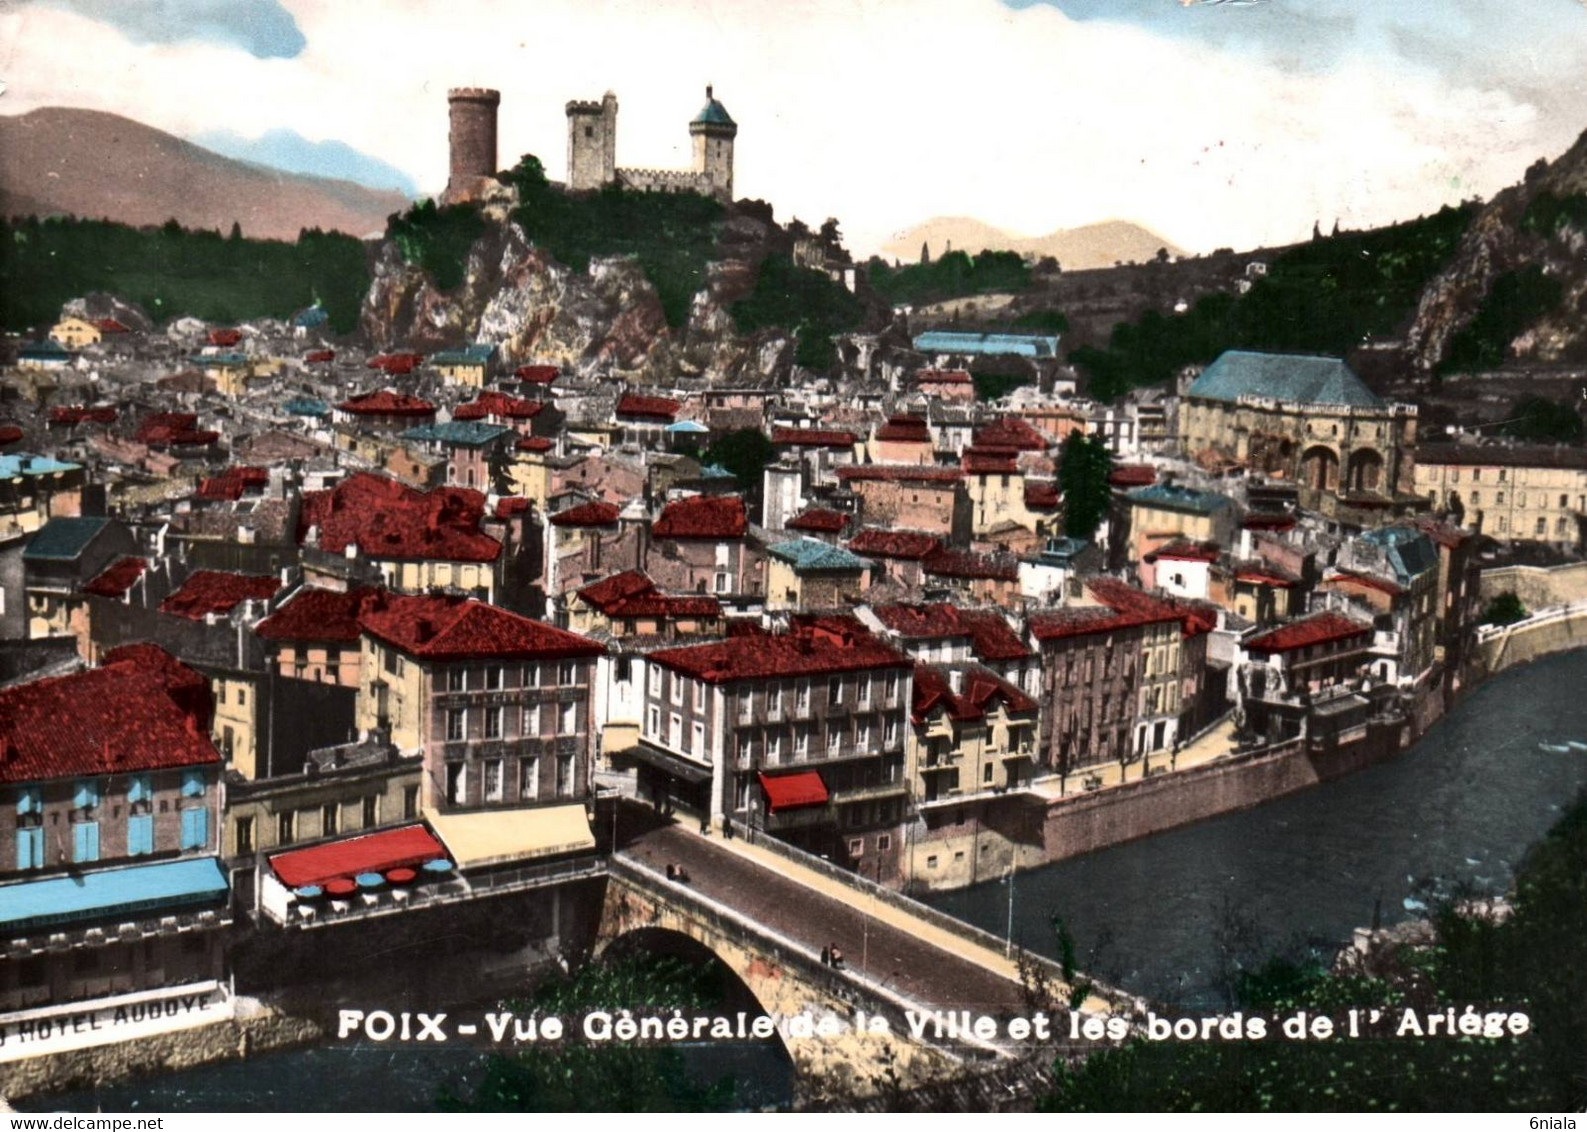 5011 Carte Postale FOIX Vue Générale De La Ville Et Les Bords De L'Ariège    (Hôtel Audove )               09 Ariège - Foix